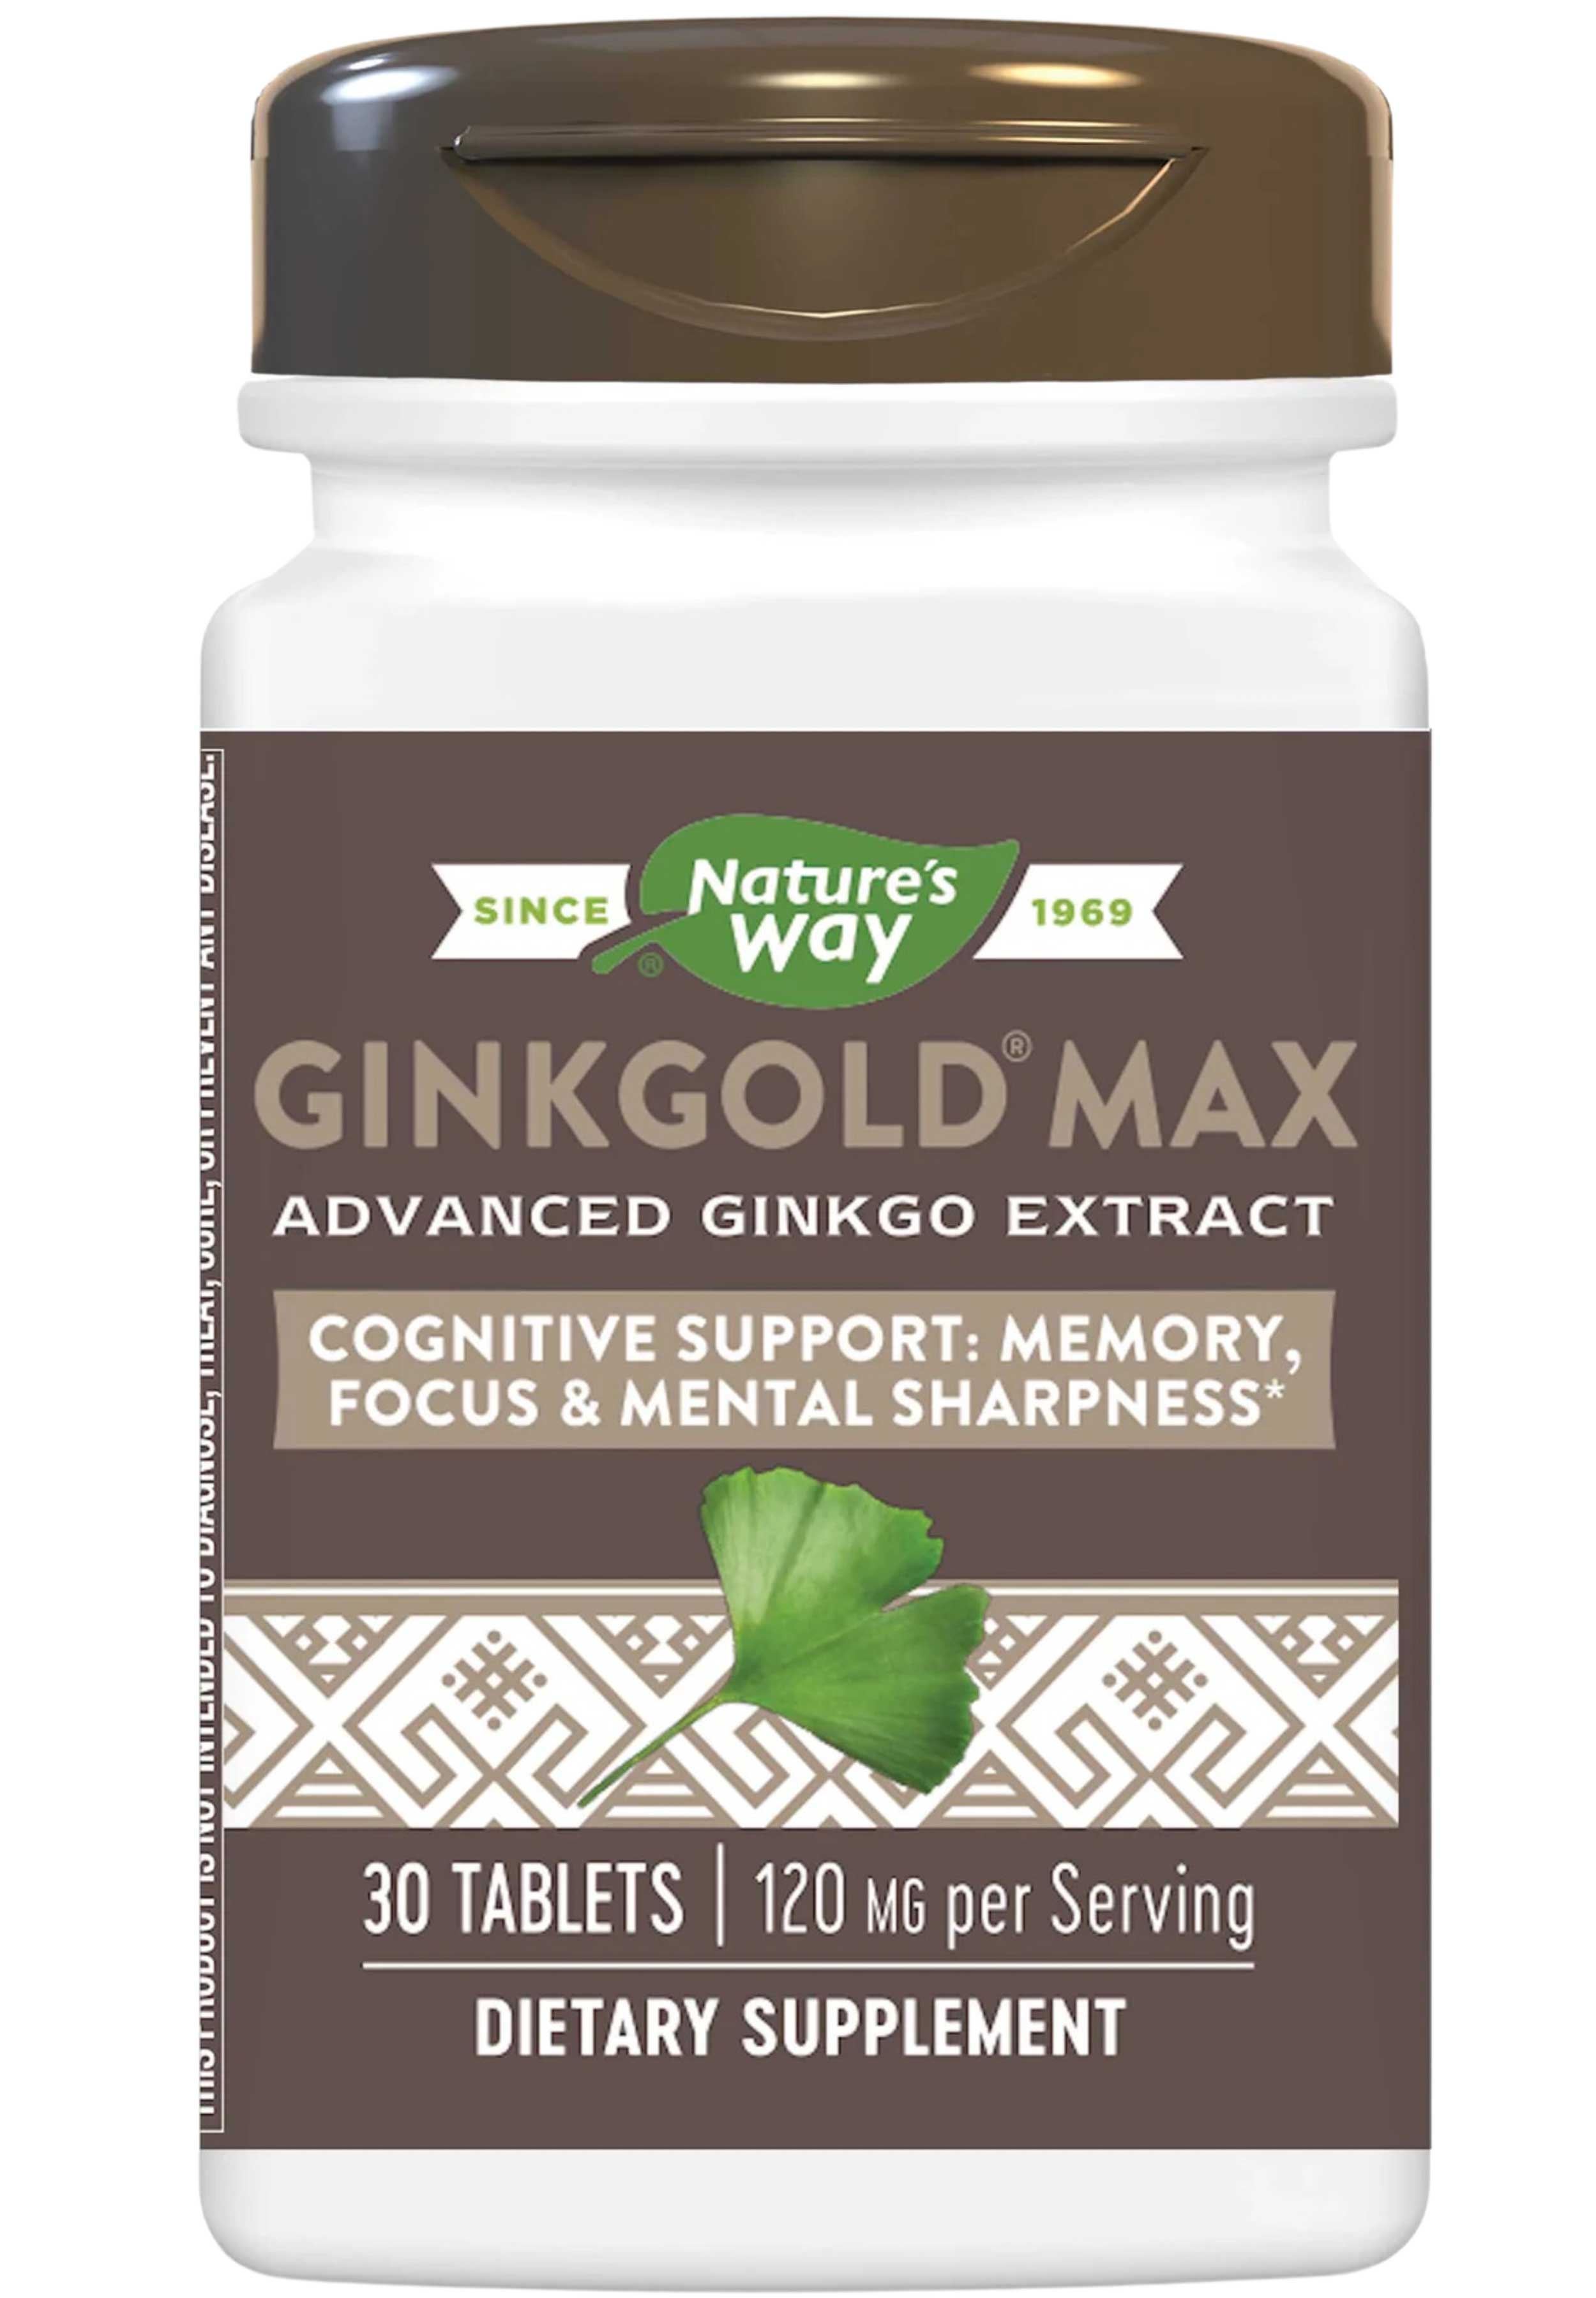 Nature's Way Ginkgold Max 120 mg